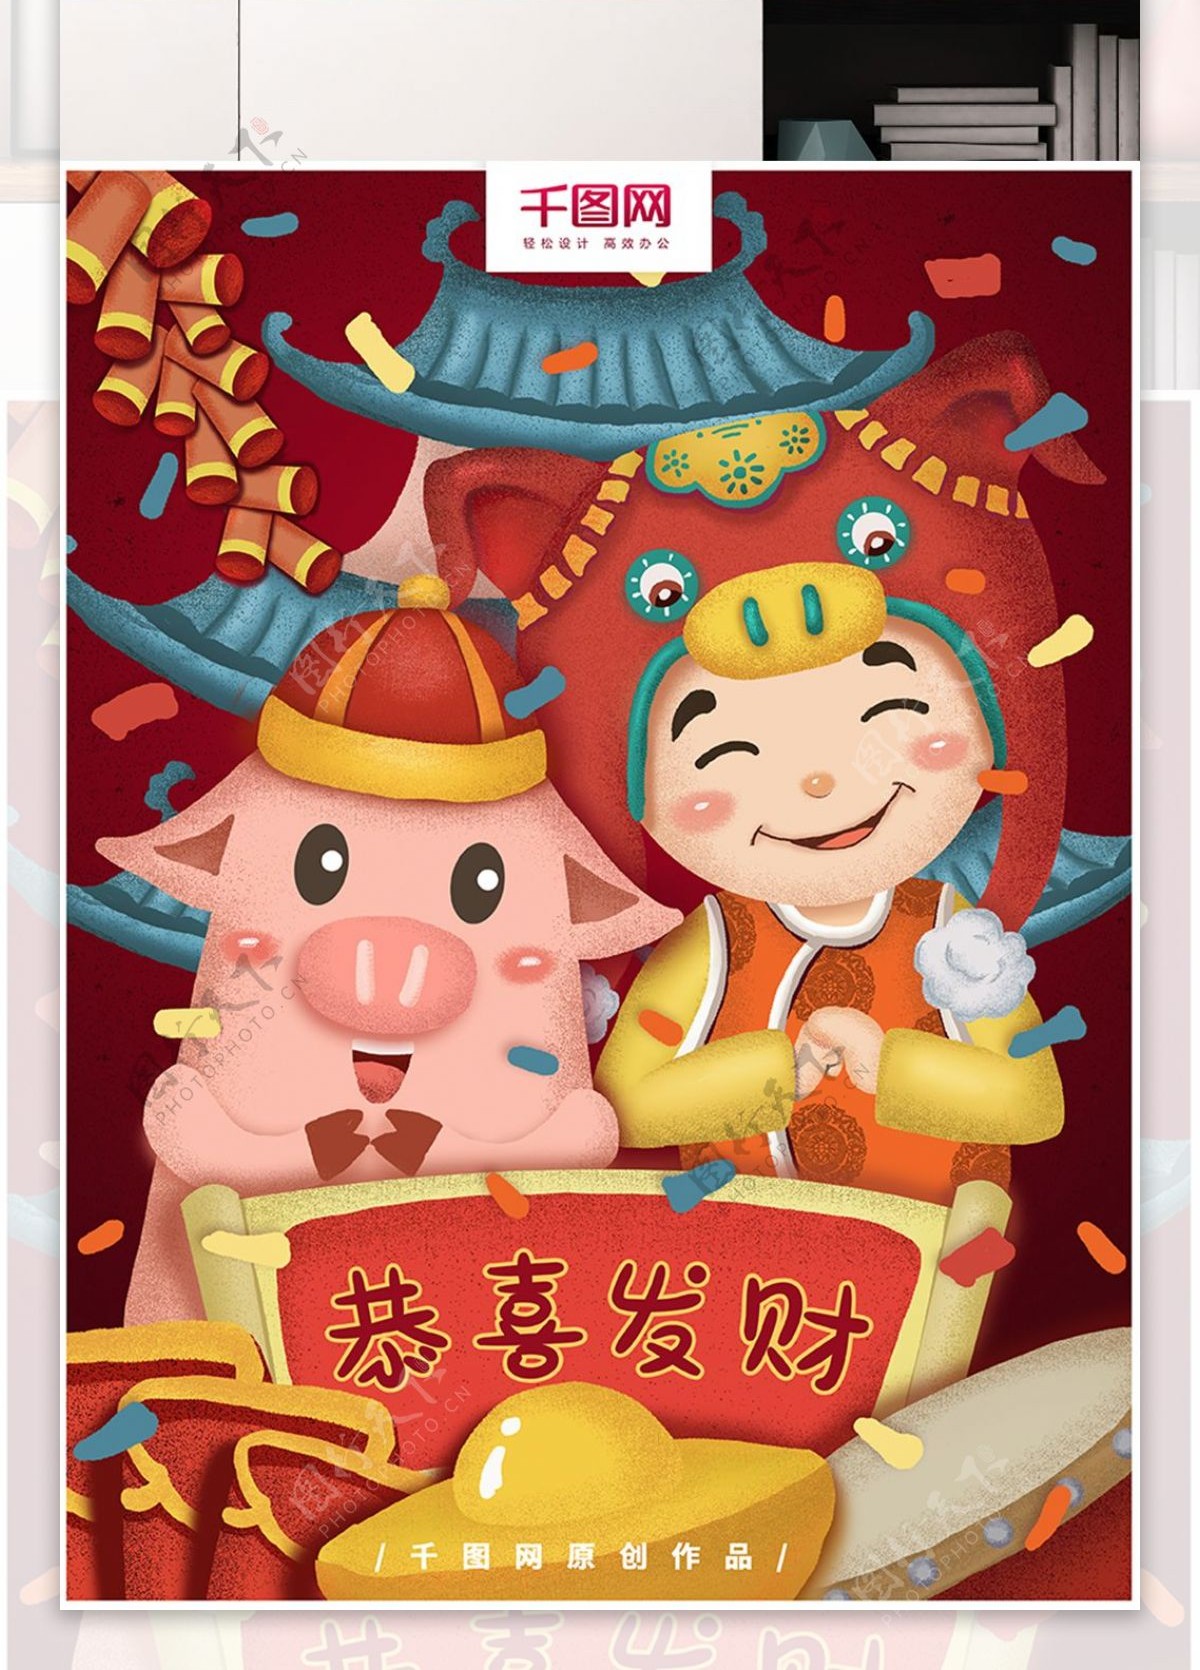 原创手绘猪年祝福恭喜发财海报